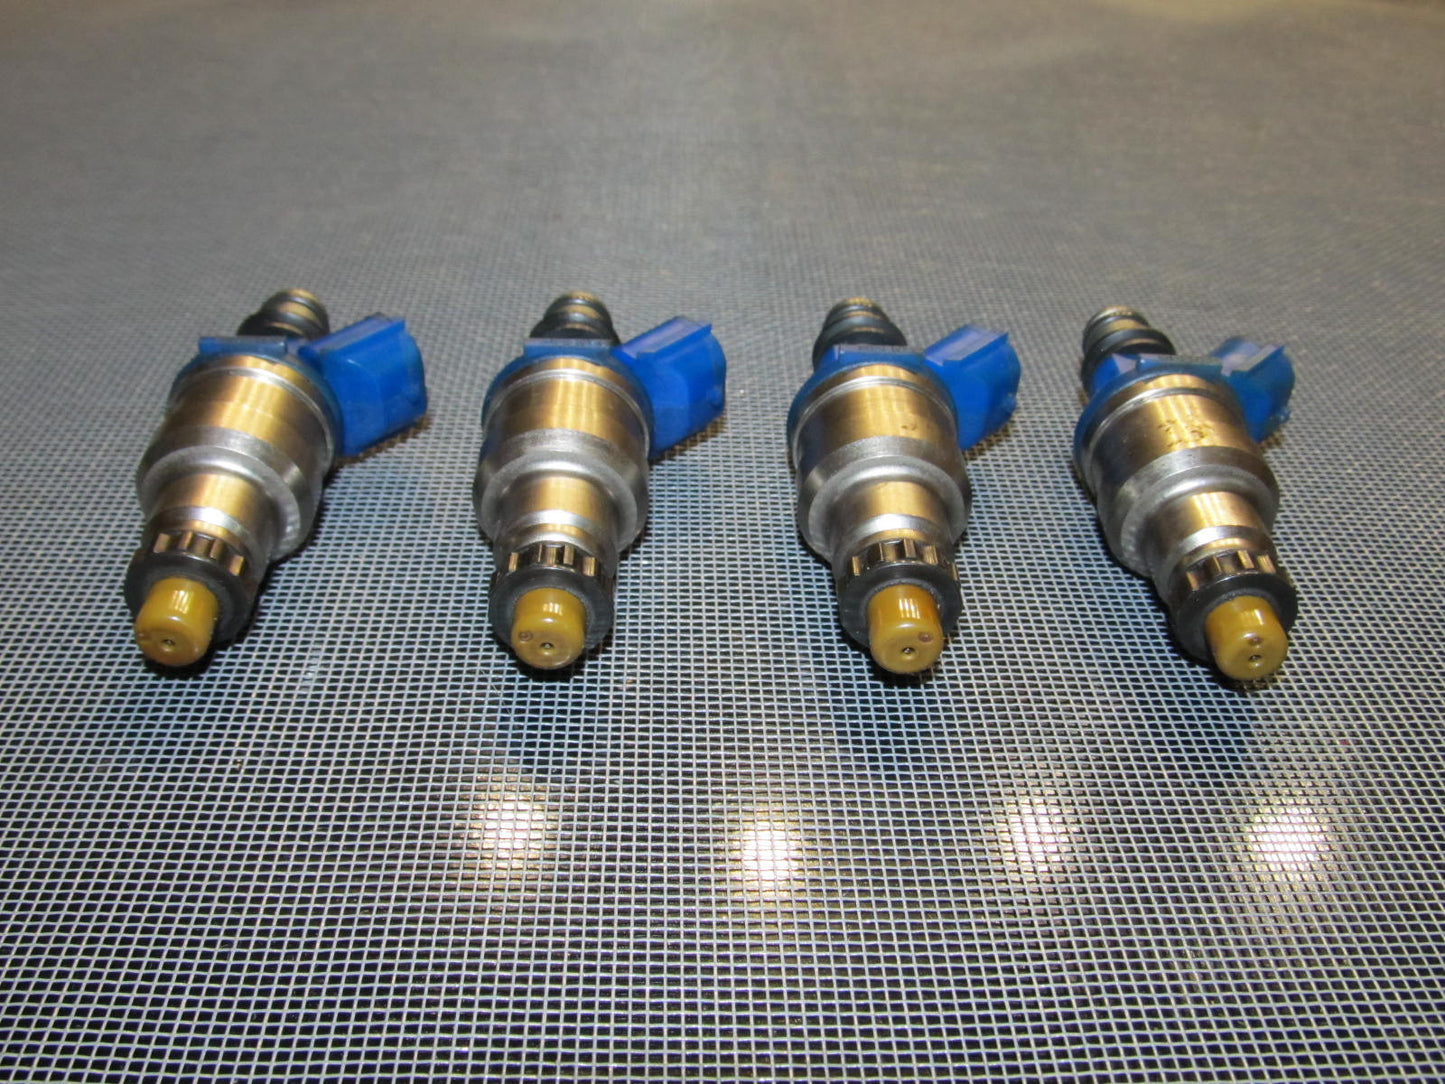 90-93 Mazda Miata OEM 1.6L Blue Fuel Injector - 4 pieces set